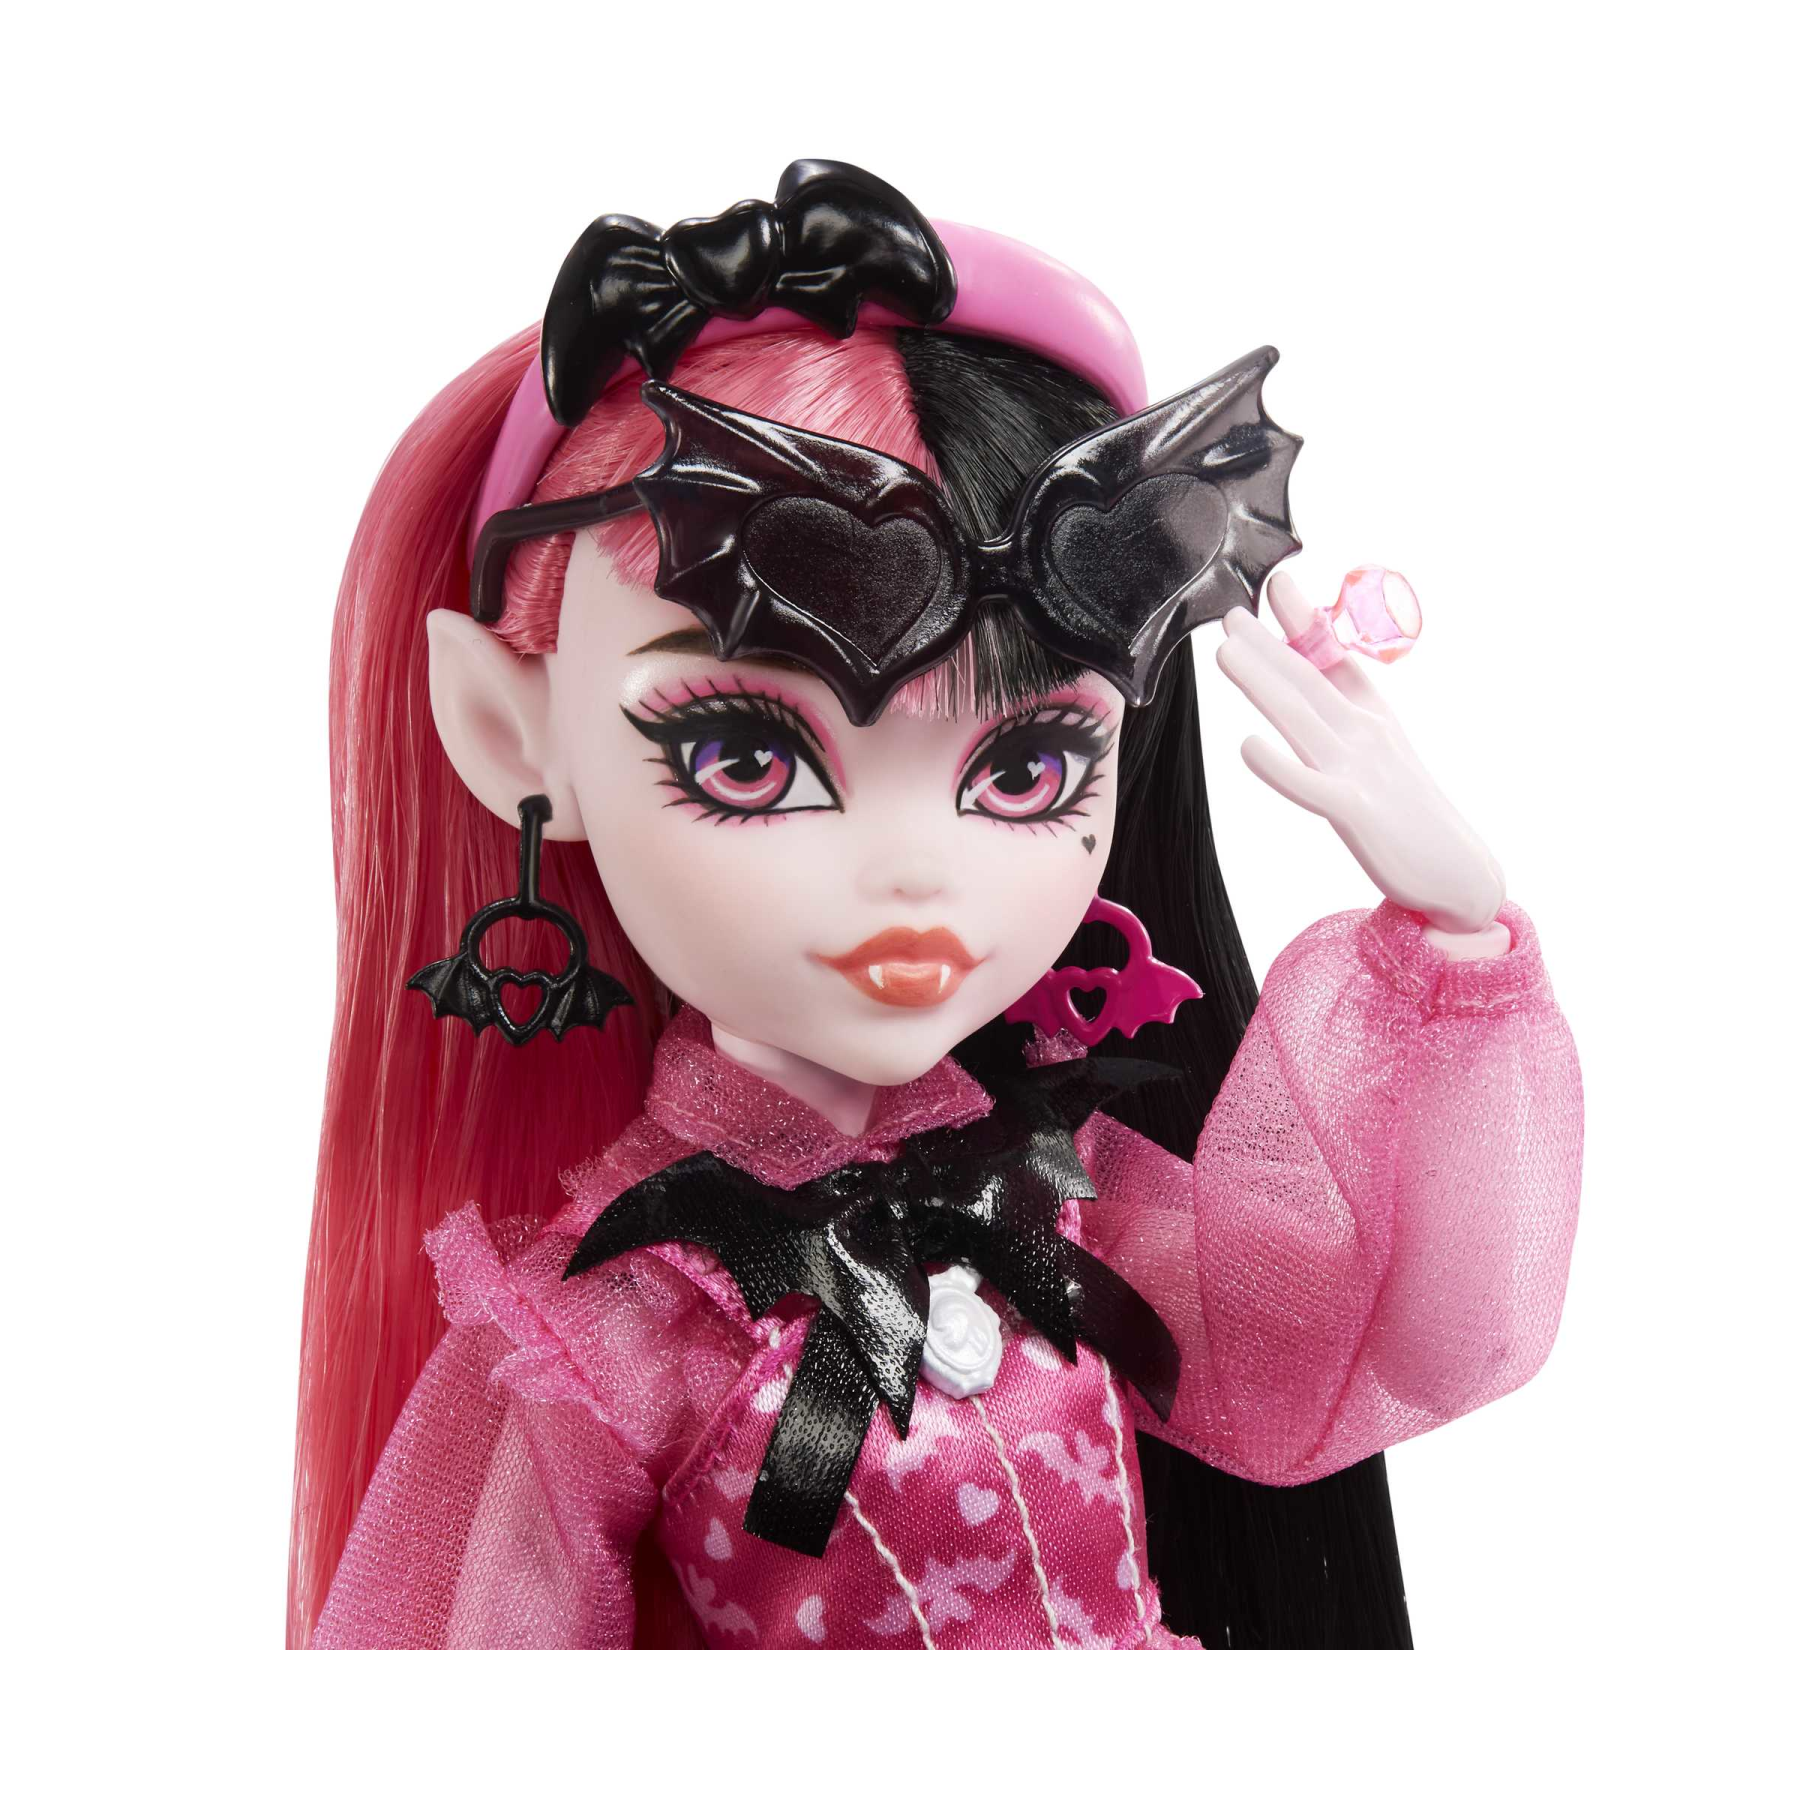 Monster high - draculaura, bambola con accessori e cucciolo di pipistrello, snodata e alla moda con capelli rosa e neri, giocattolo per bambini, 4+ anni, hhk51 - Monster High